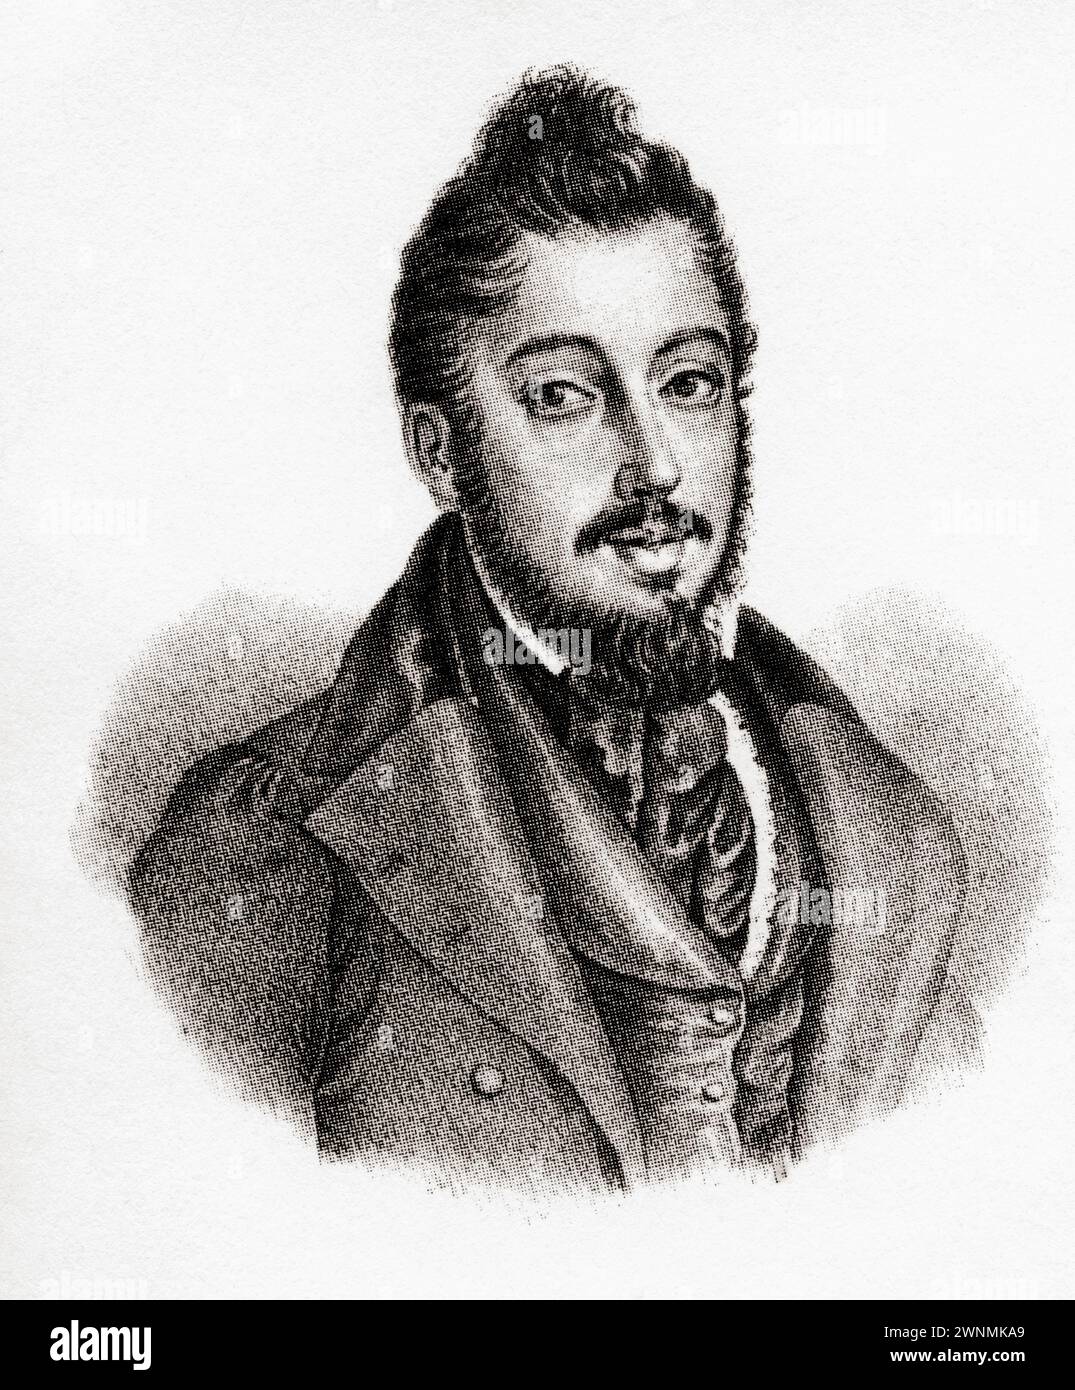 Mariano José de Larra y Sánchez de Castro, 1809–1837. Der spanische Journalist, Romanautor, Dramatiker und Politiker, der mit 27 Jahren Selbstmord beging. Stockfoto